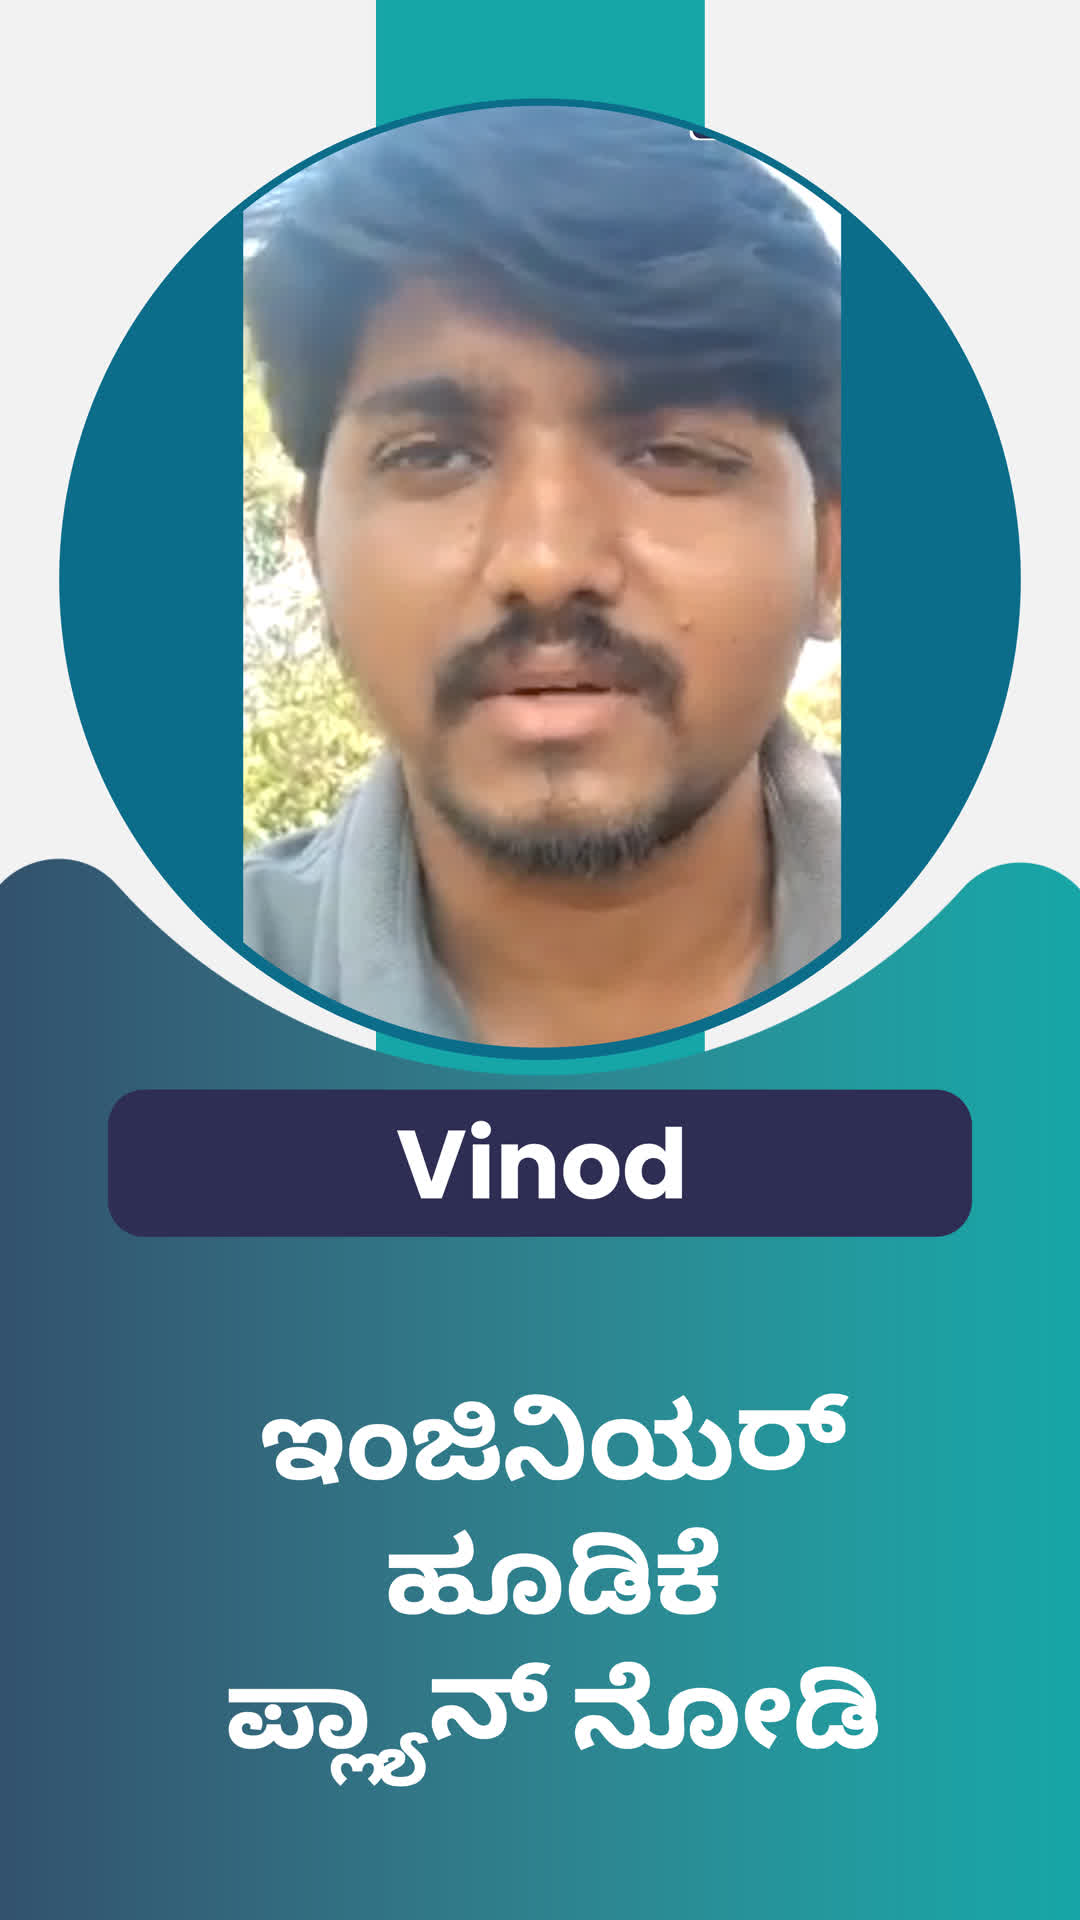 Vinod's Honest Review of ffreedom app - Chikballapur ,Karnataka